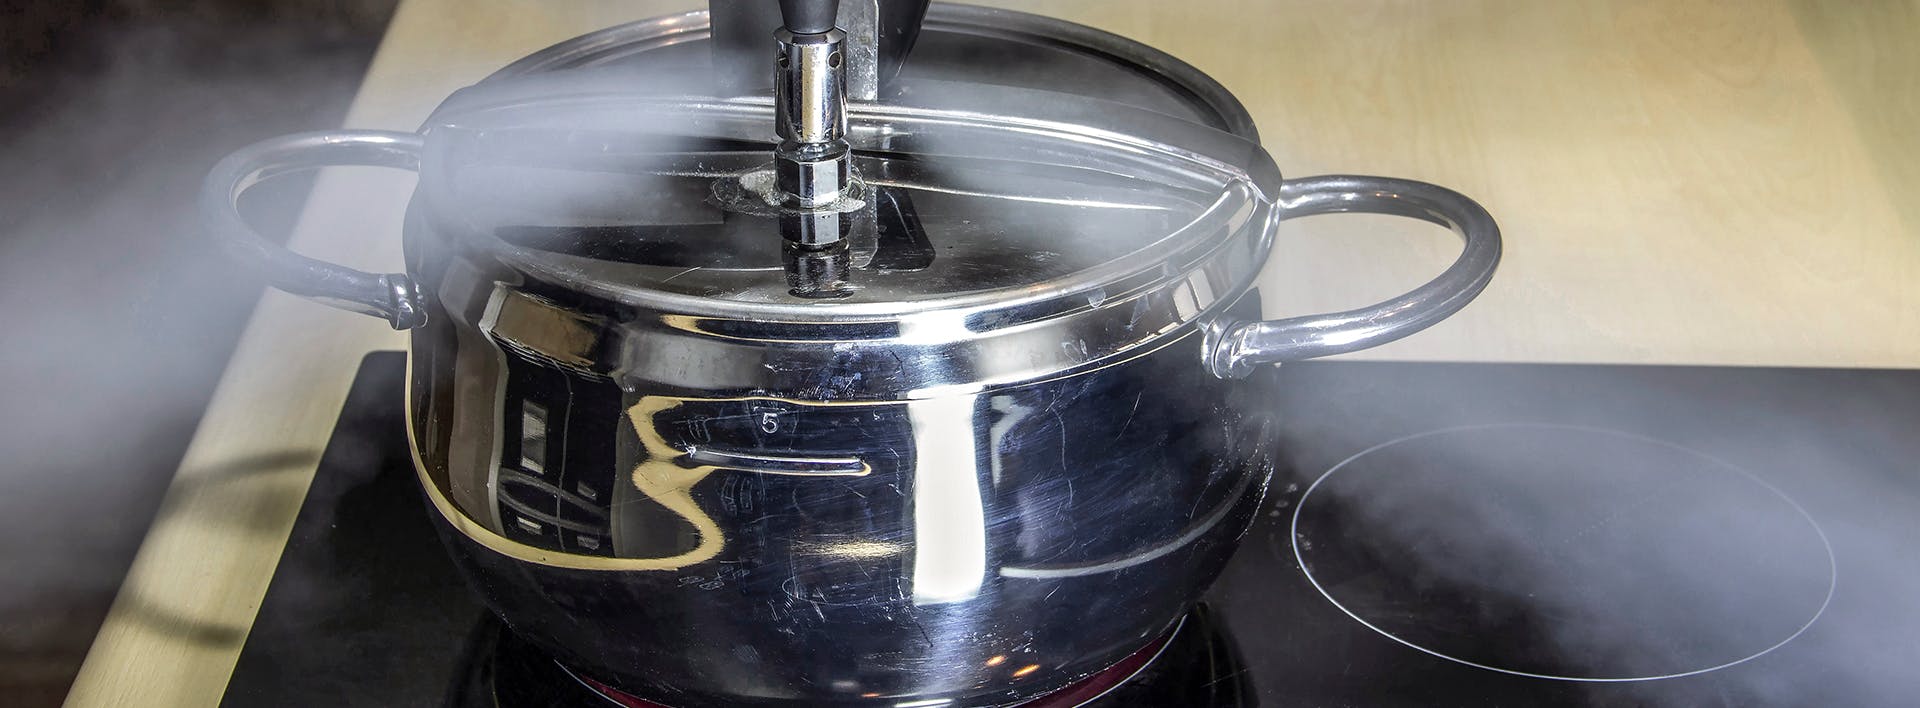 Best Buy Recalls Insignia™ Pressure Cookers Due to Burn Hazard